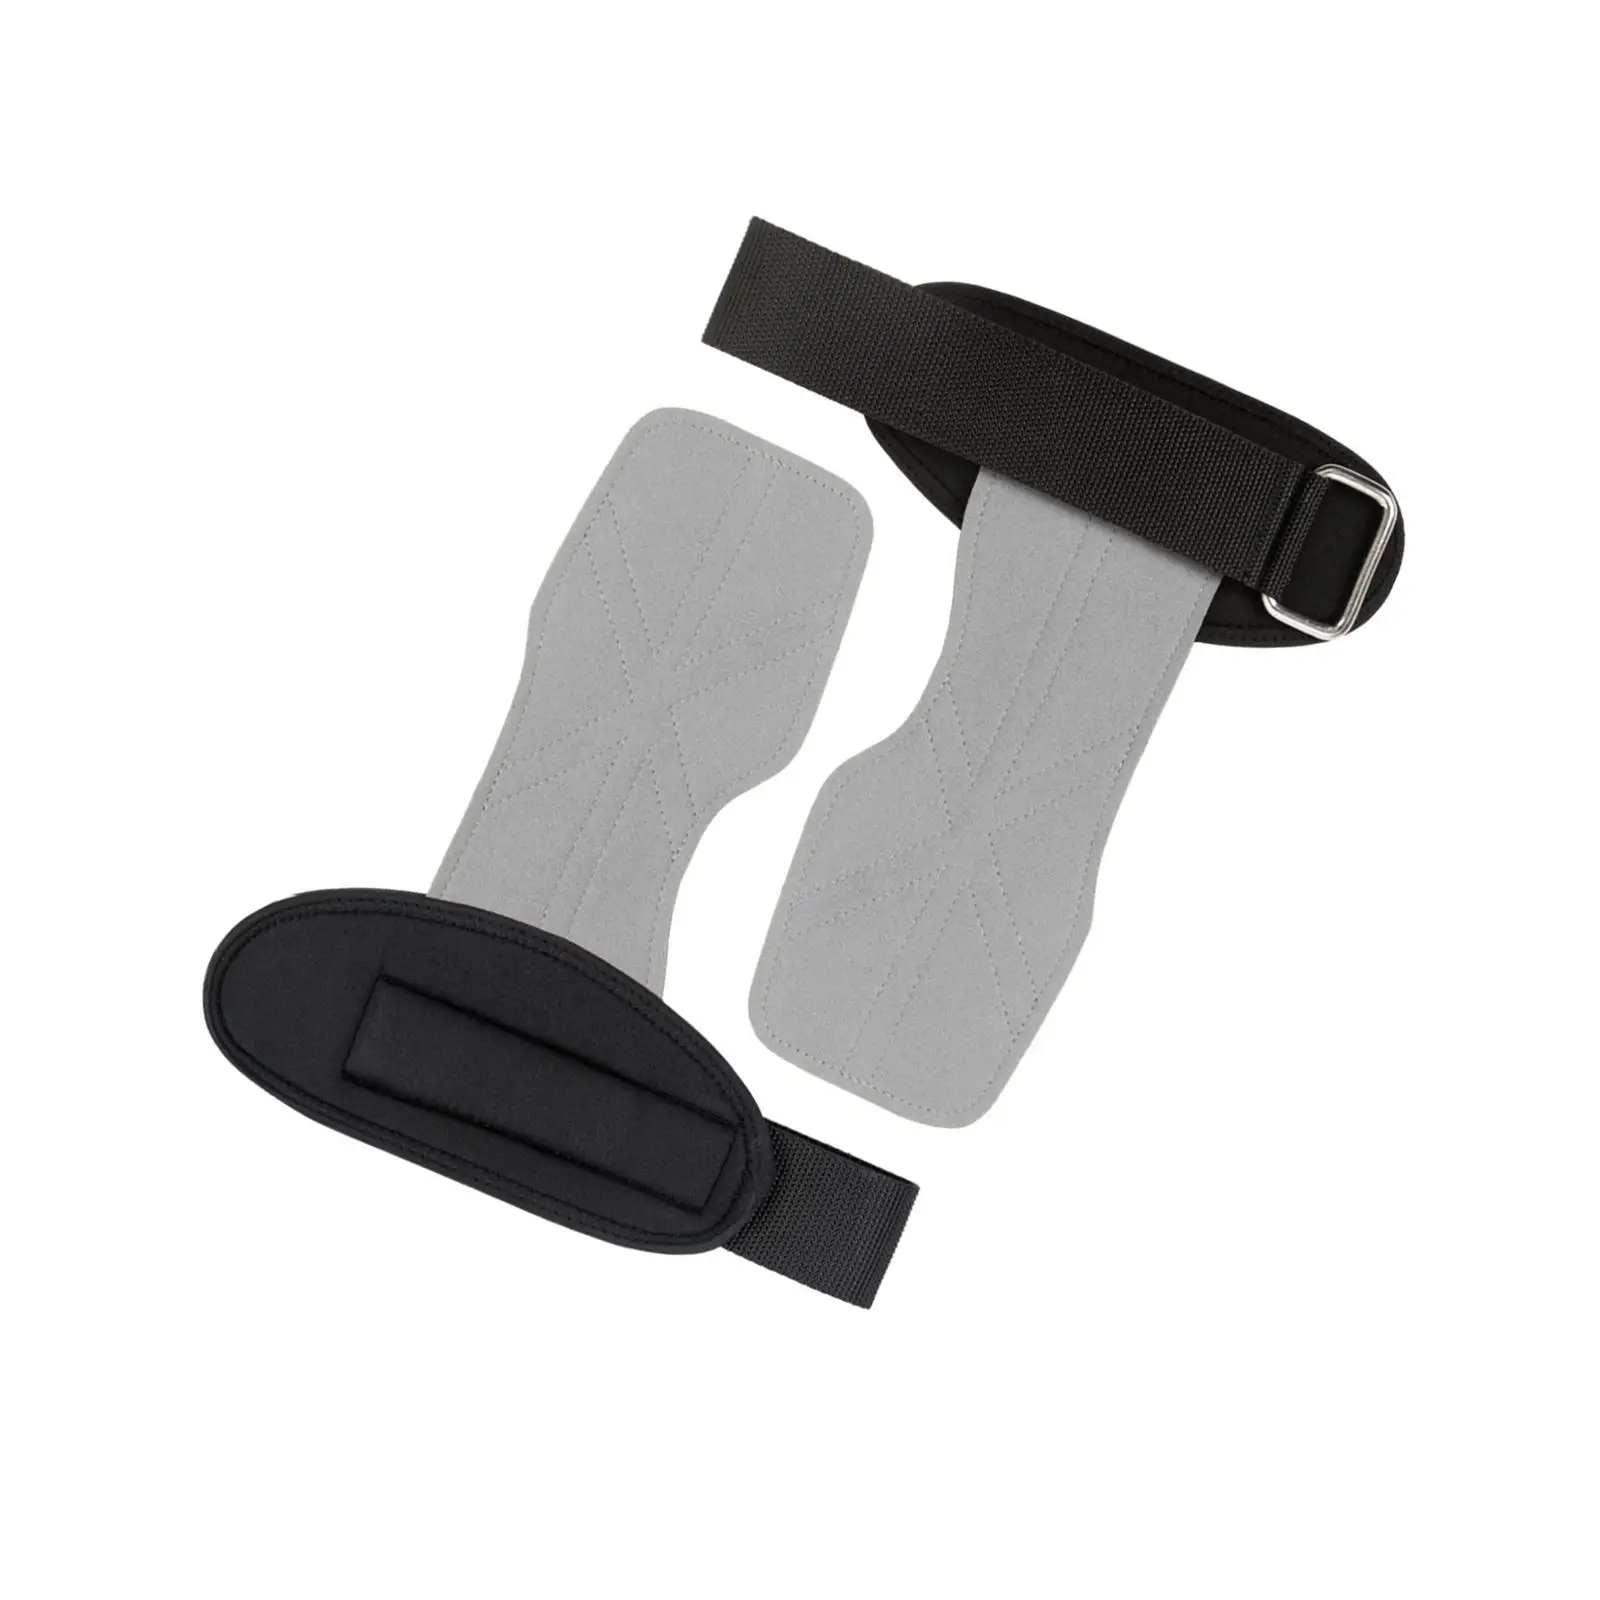 Lifting Wrist Straps Wear Resistance Premium Pull Ups Weight Lifting Hooks for Exercise Kettlebells Dumbbell Deadlift Men Women